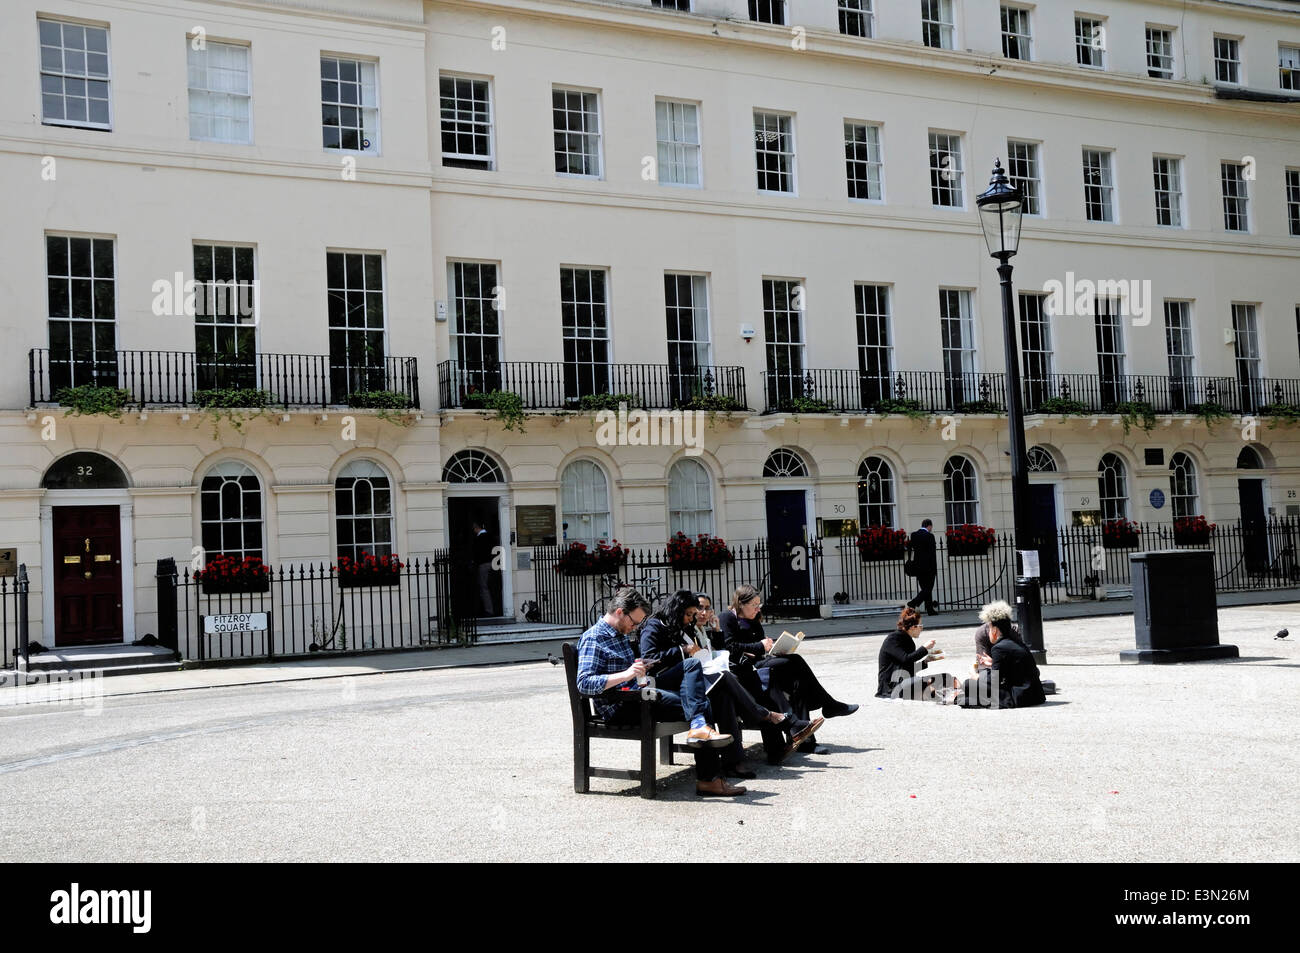 Les gens assis sur un banc de manger le déjeuner à Fitzroy Square, Bloomsbury Londres Angleterre Royaume-uni Banque D'Images